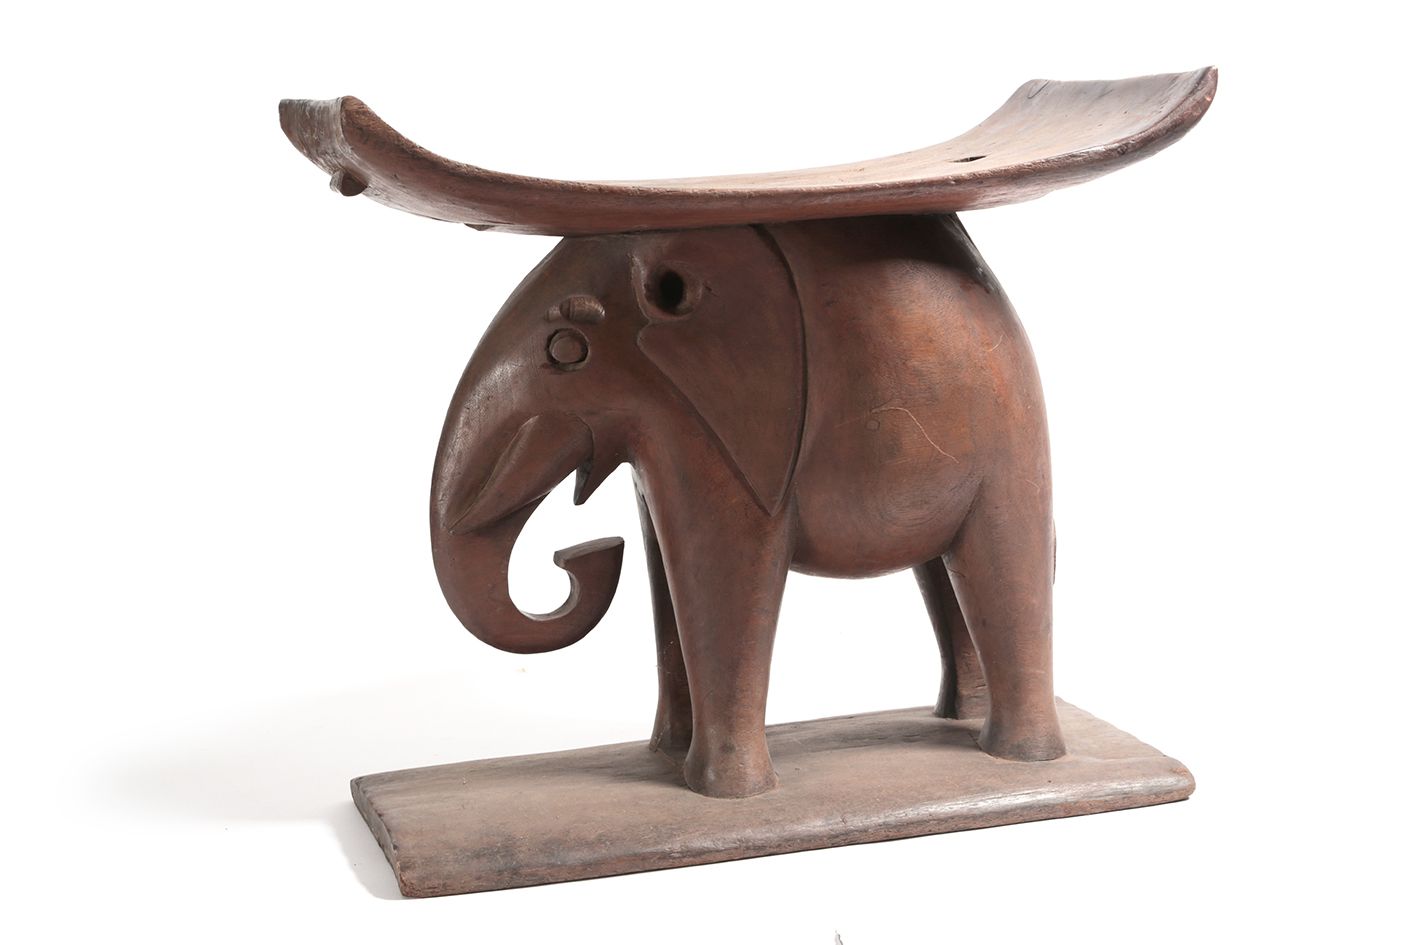 Tabouret Ashanti 代表大象搬运座位的凳子。

加纳，阿散蒂族裔群体

59x30x52厘米